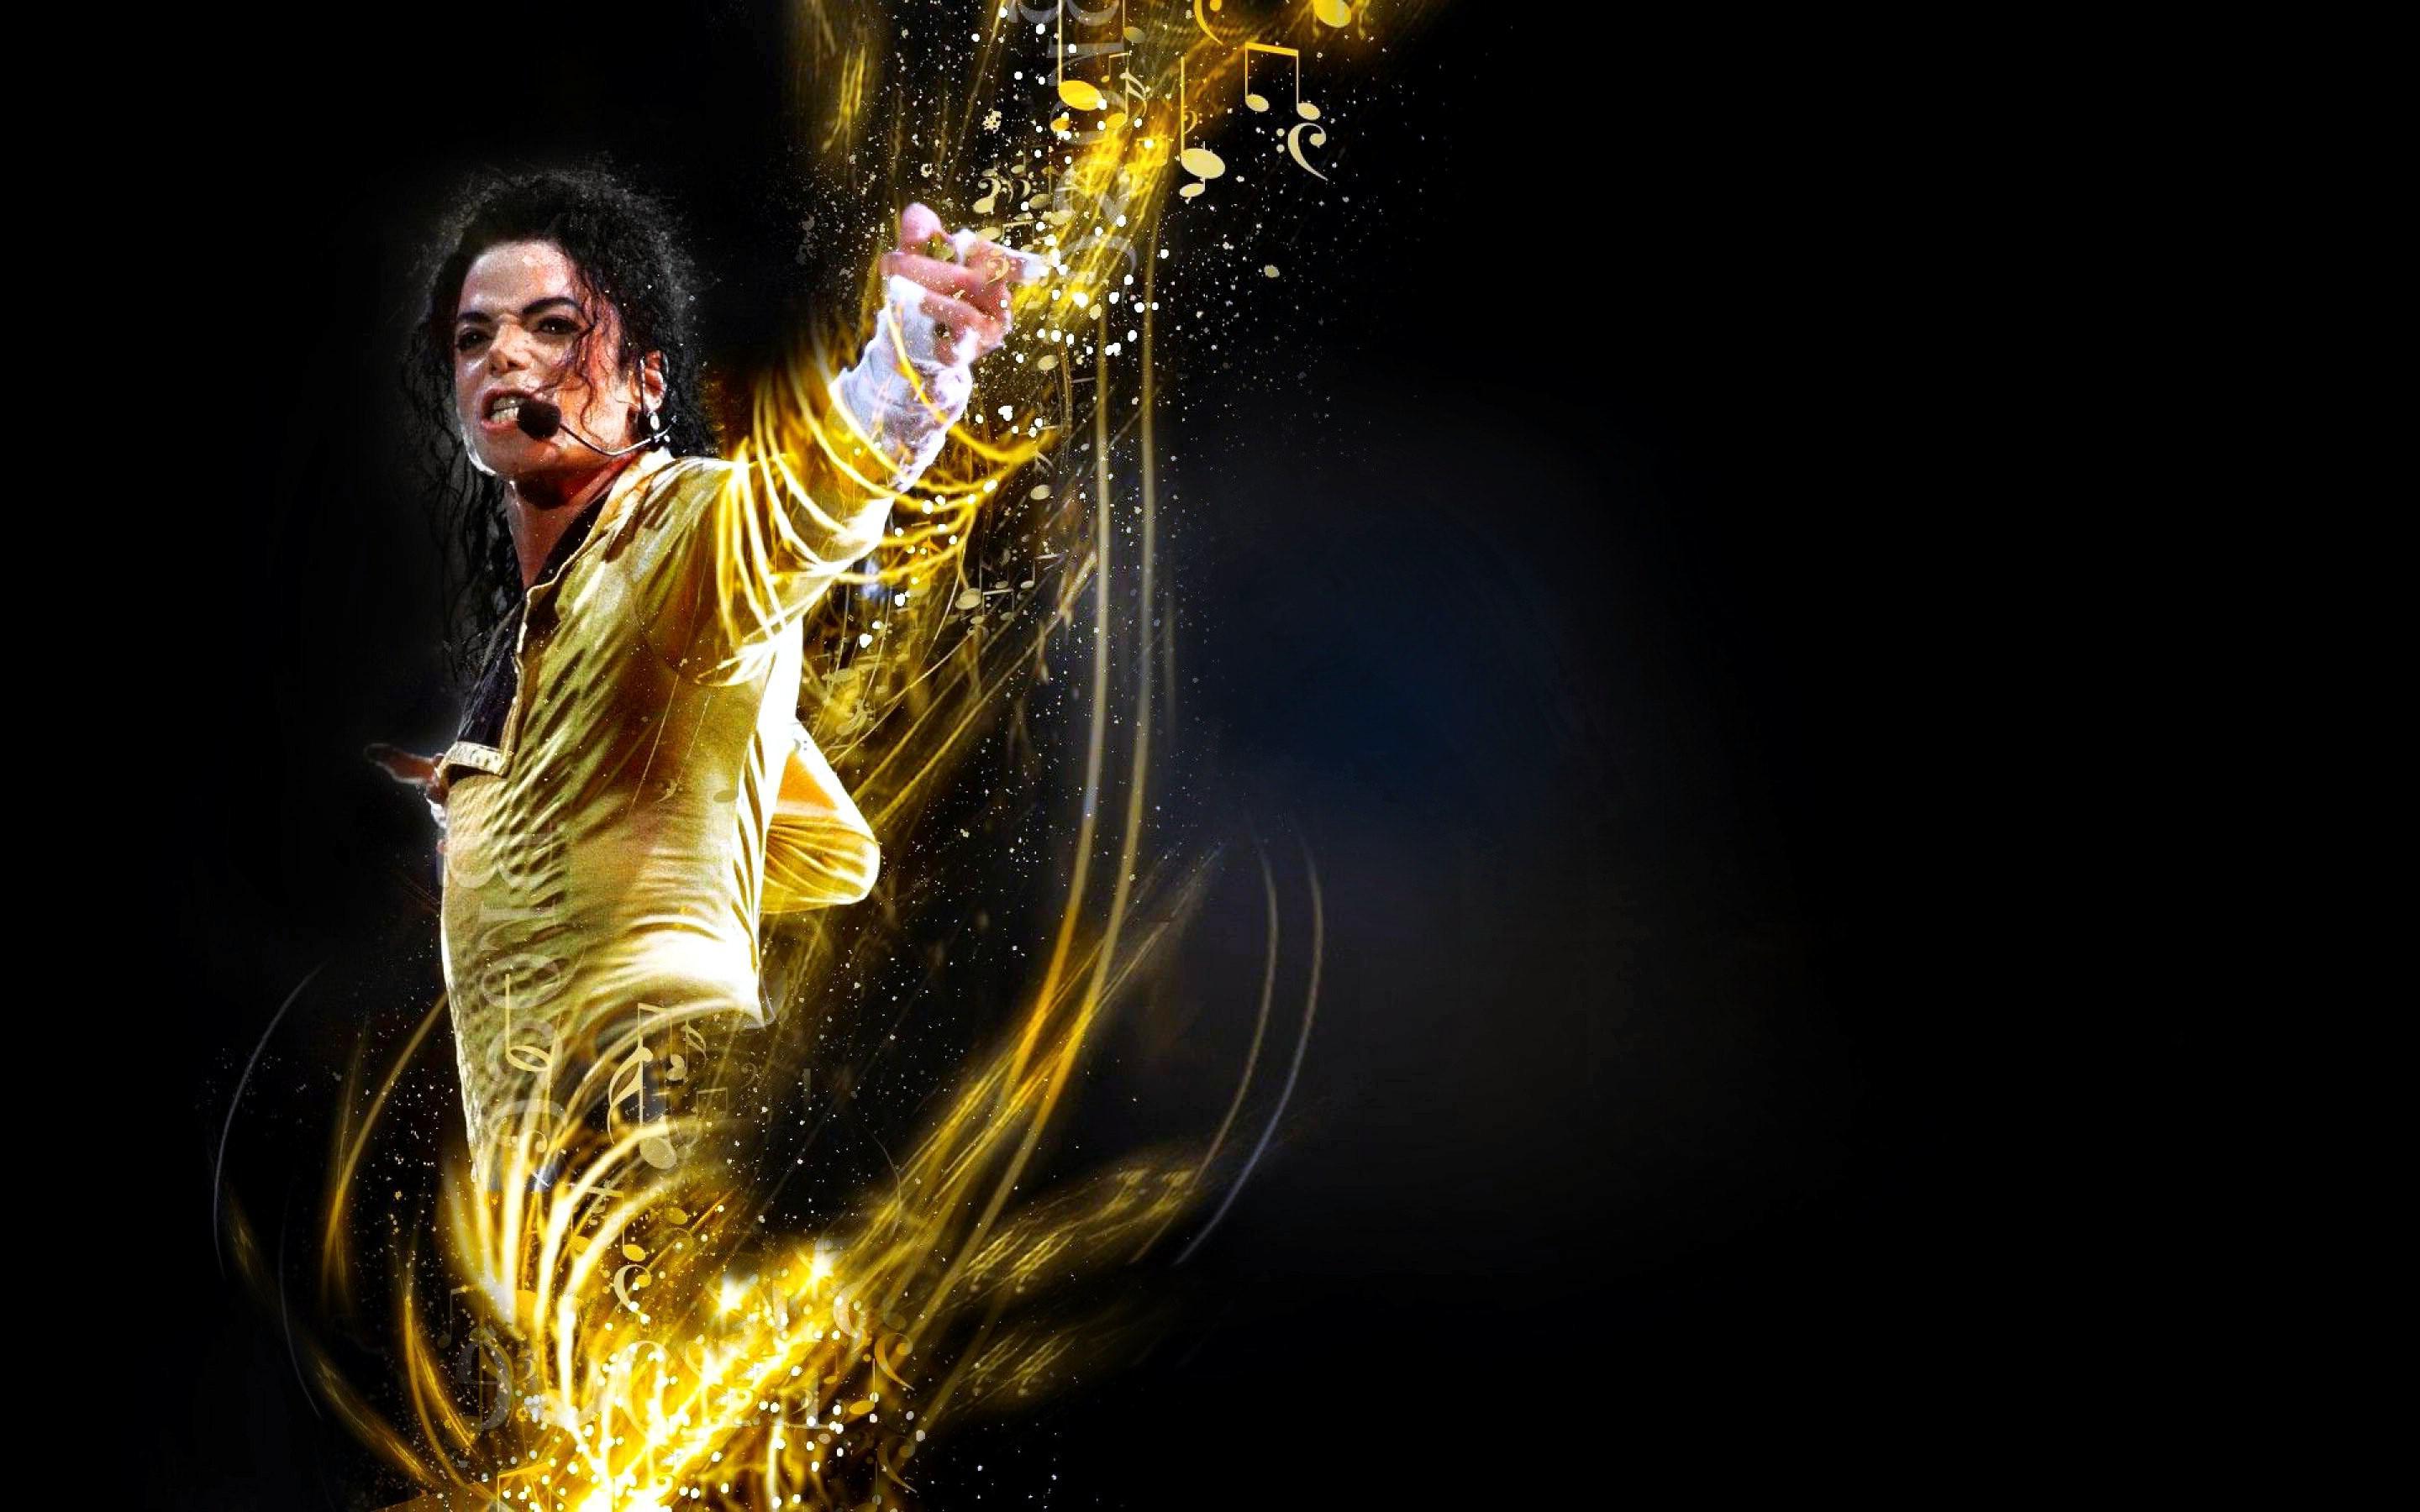 Free HD Michael Jackson Wallpaper